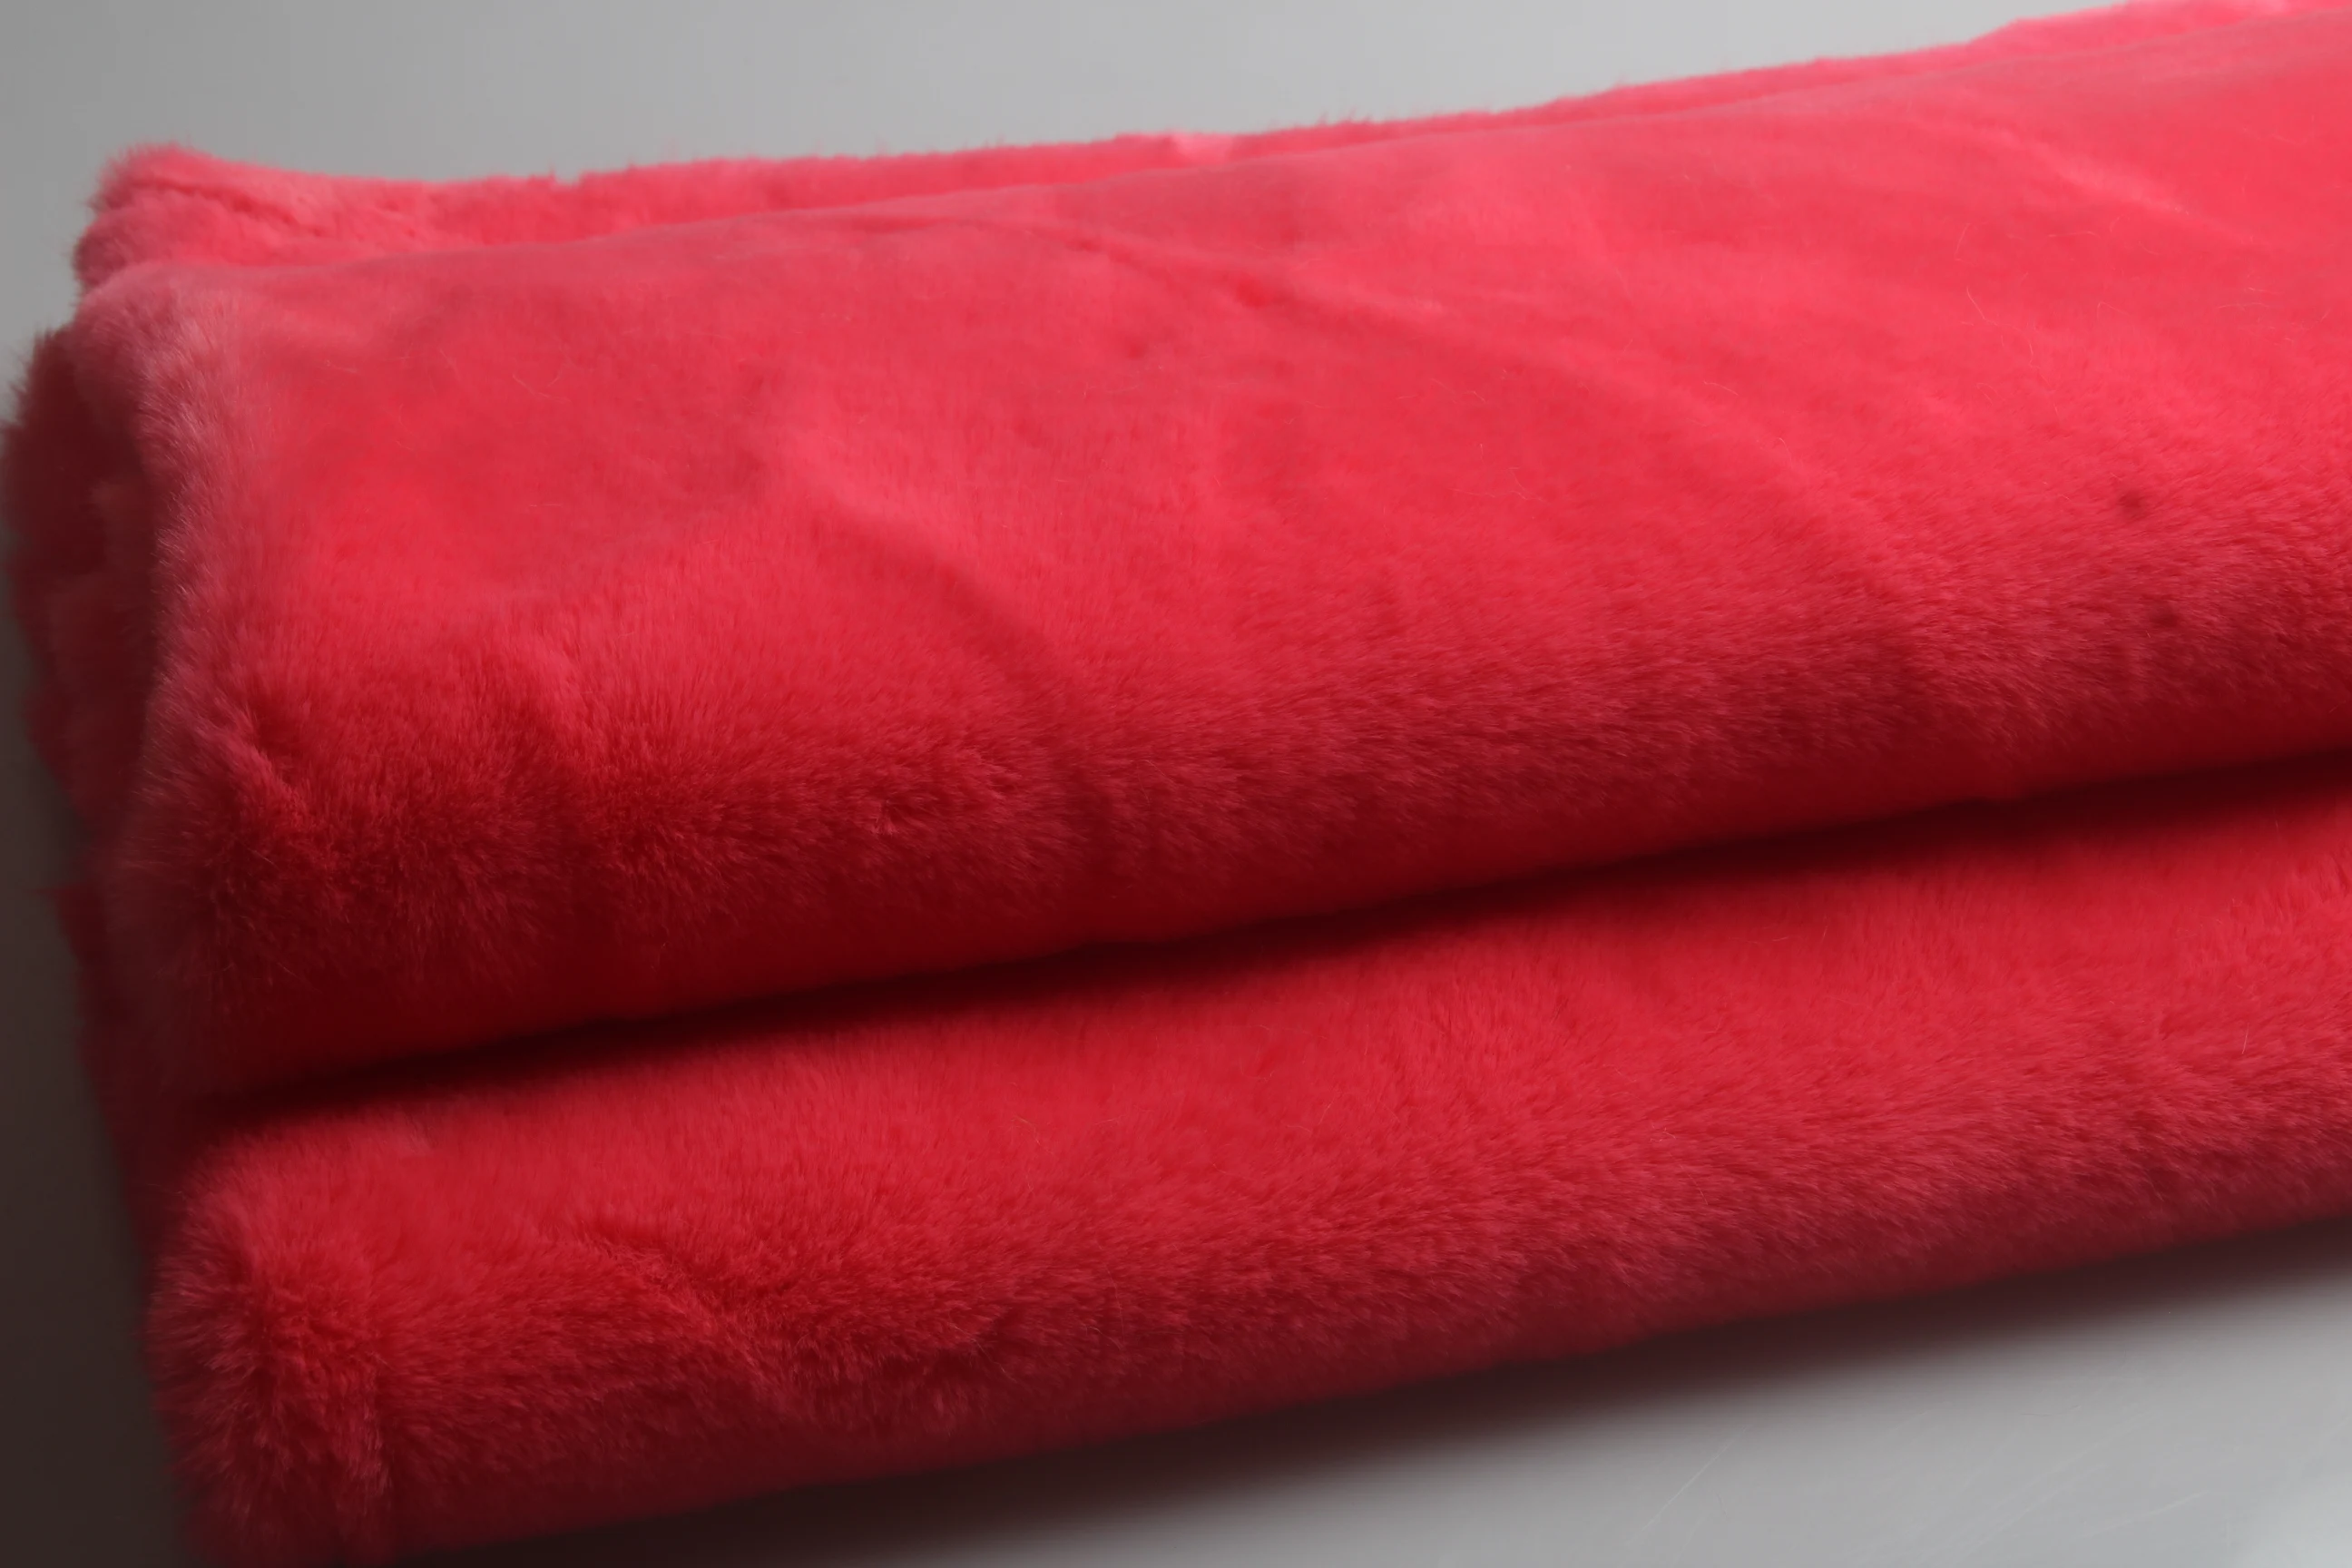 50X160 см Искусственный Ангорский волчок ткань утолщение материал МЕХ, DIY счетчик игрушек выставочный фон 900 г/м 12 мм толщина - Цвет: 24 watermellow red